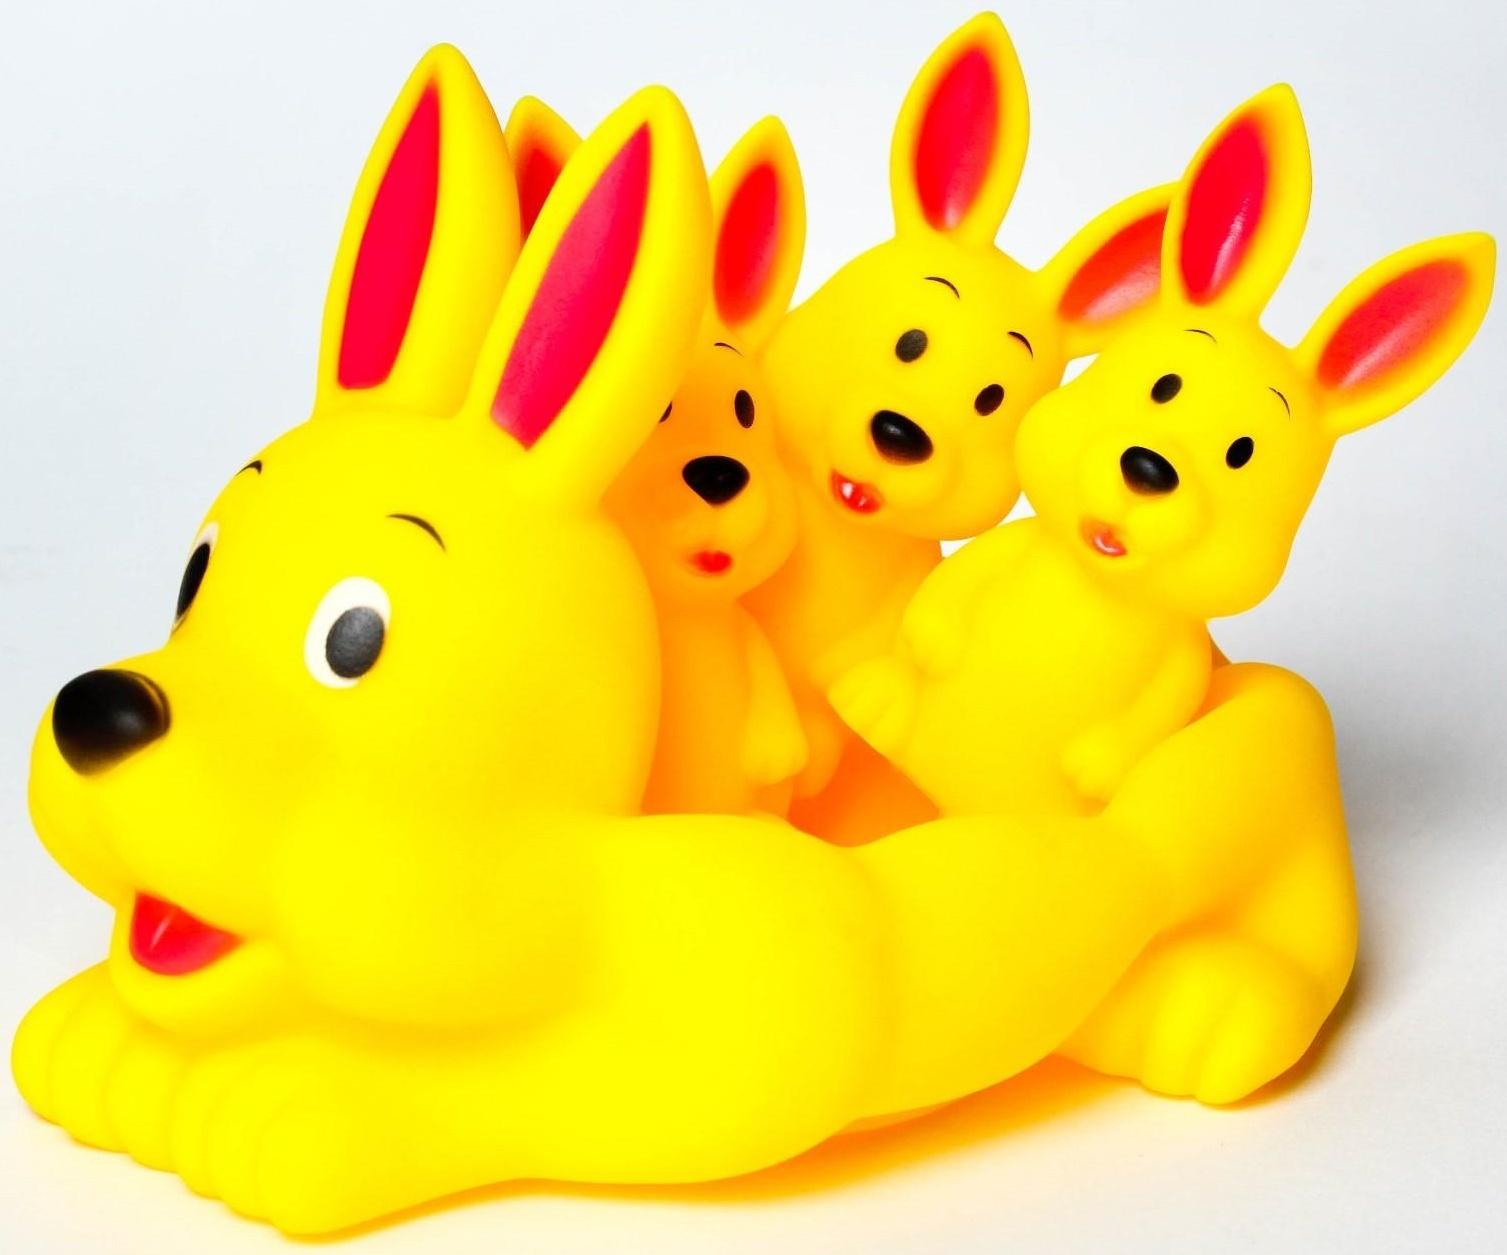 Набор резиновых игрушек с пищалкой для игры в ванной МИКС: мыльница, игрушки 3 шт. 15 см